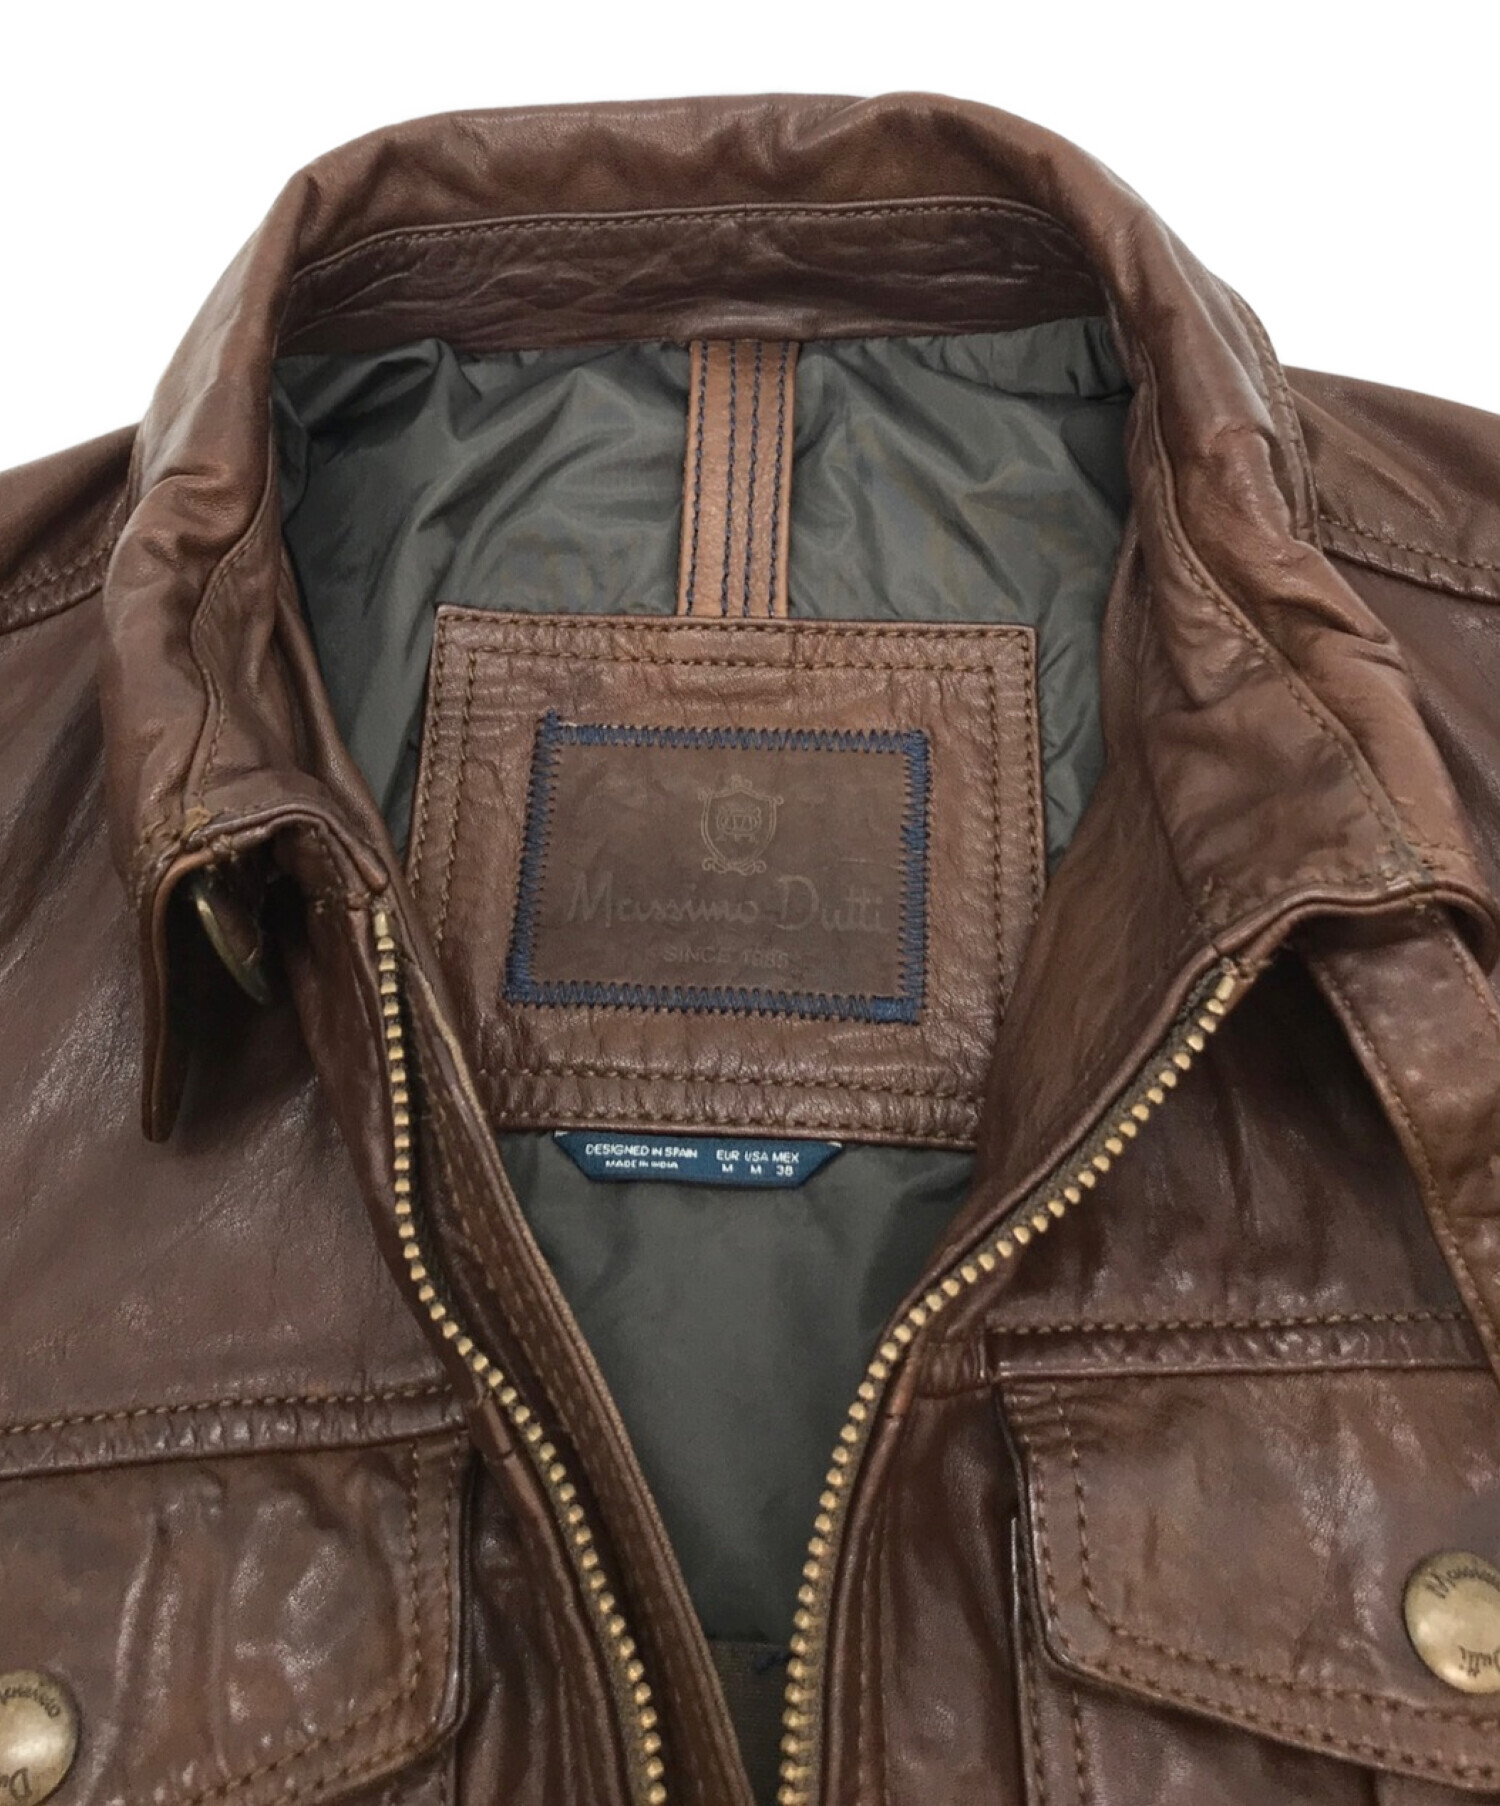 massimo Dutti (マッシモドゥッティ) Tumbled leather jacket with pockets レザージャケット ブラウン  サイズ:M